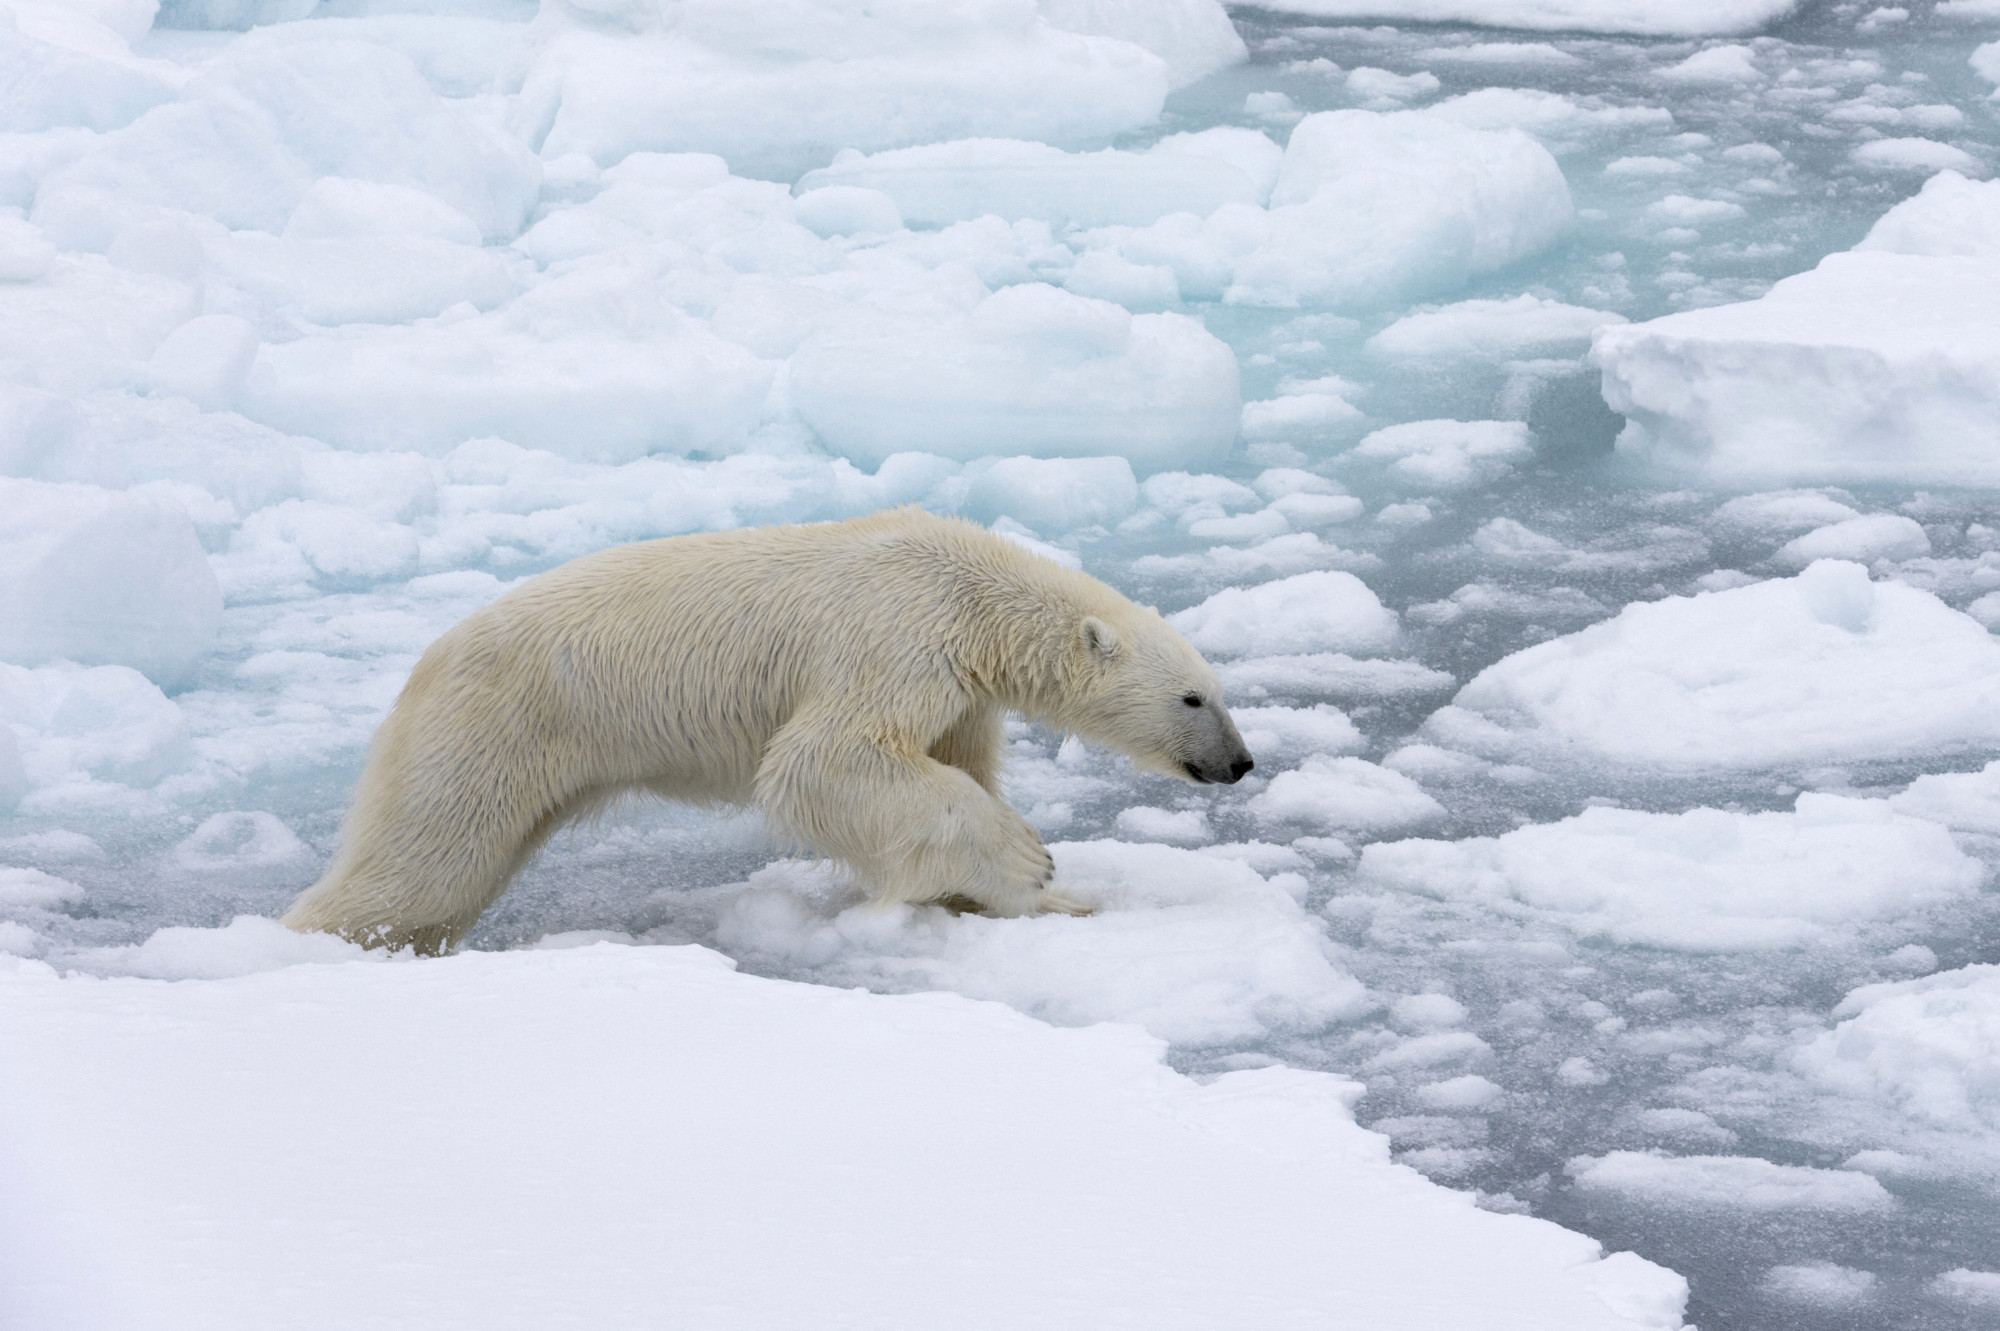 Nemcsak a tengerszint, hanem a hőmérséklet emelkedése miatt is veszélyes a sarki jég olvadása